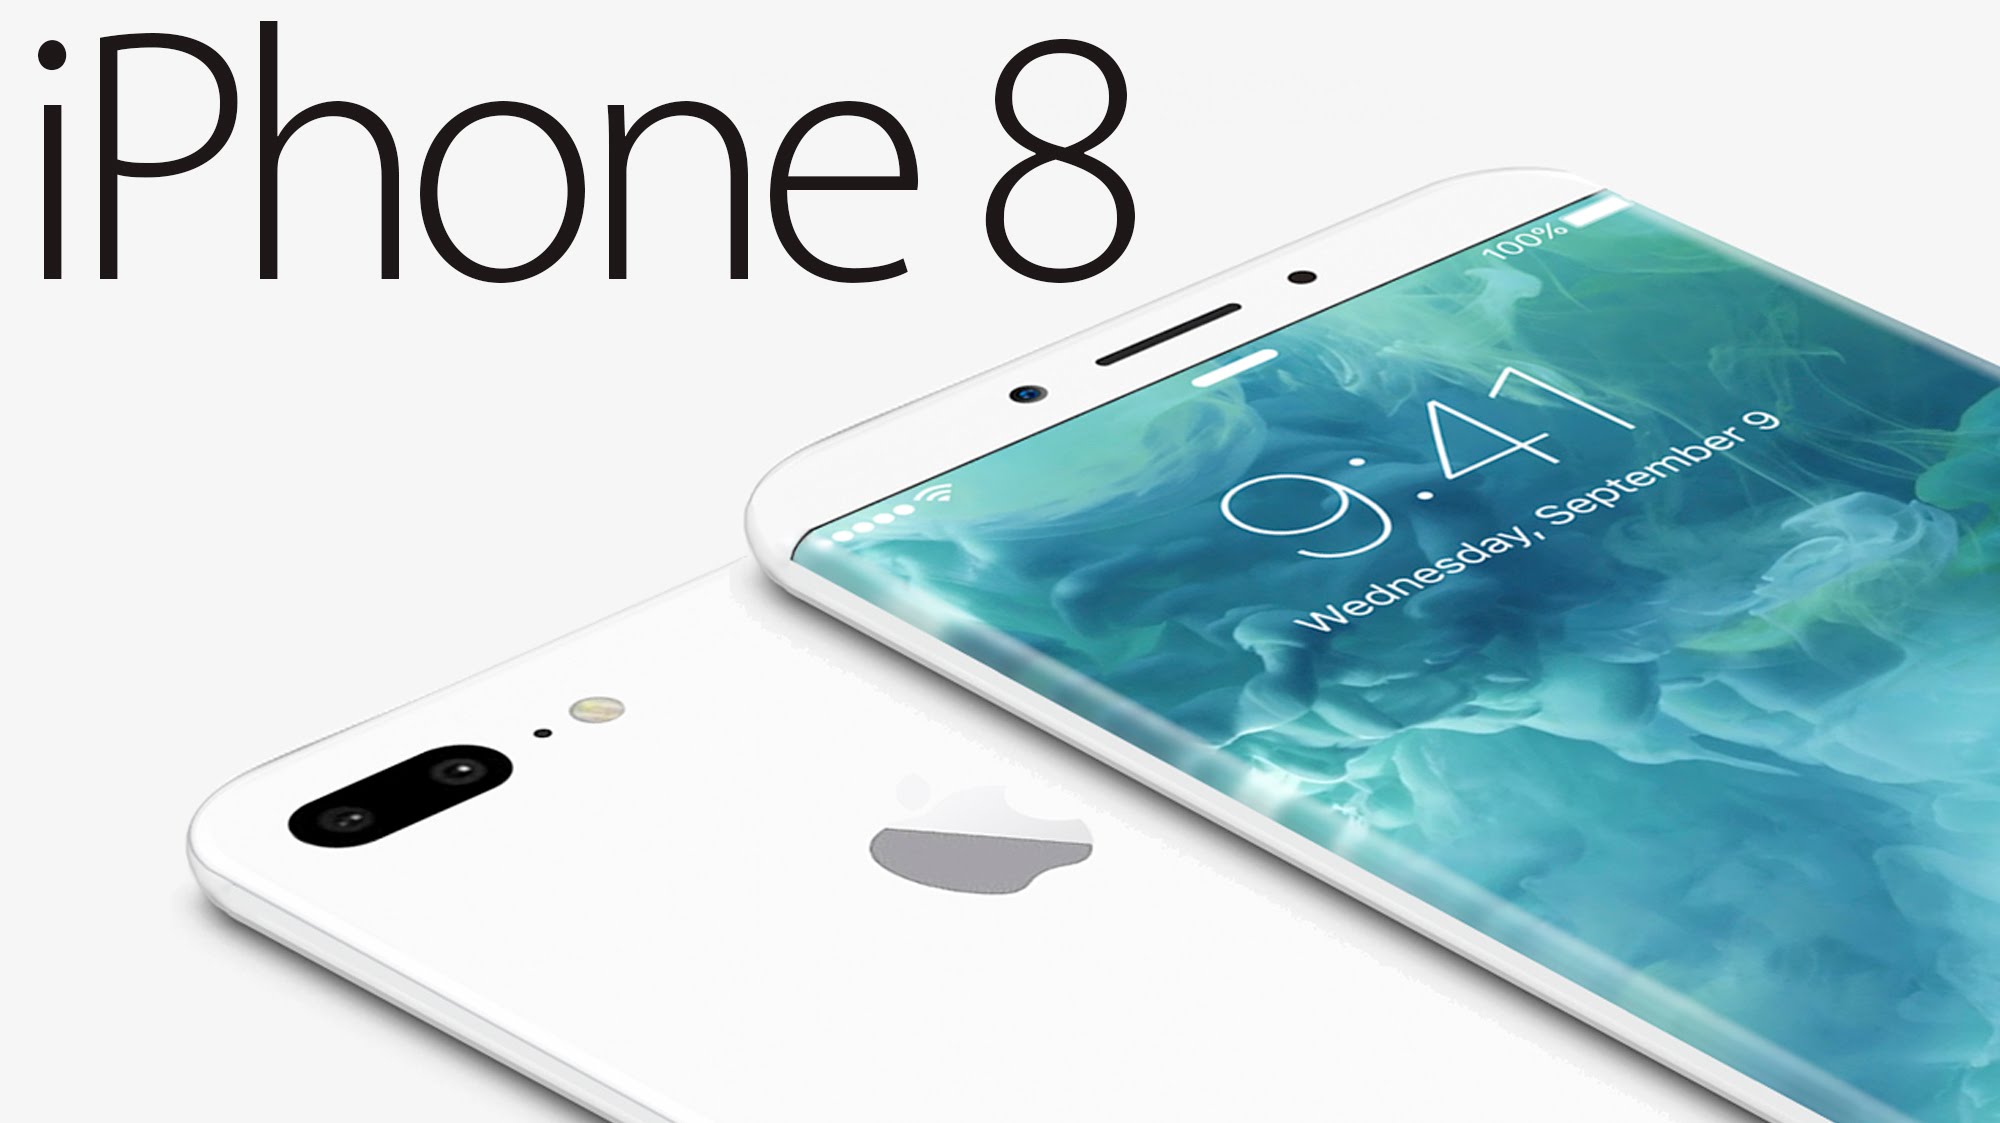 iPhone 8: Những thông tin mới nhất được tiết lộ?